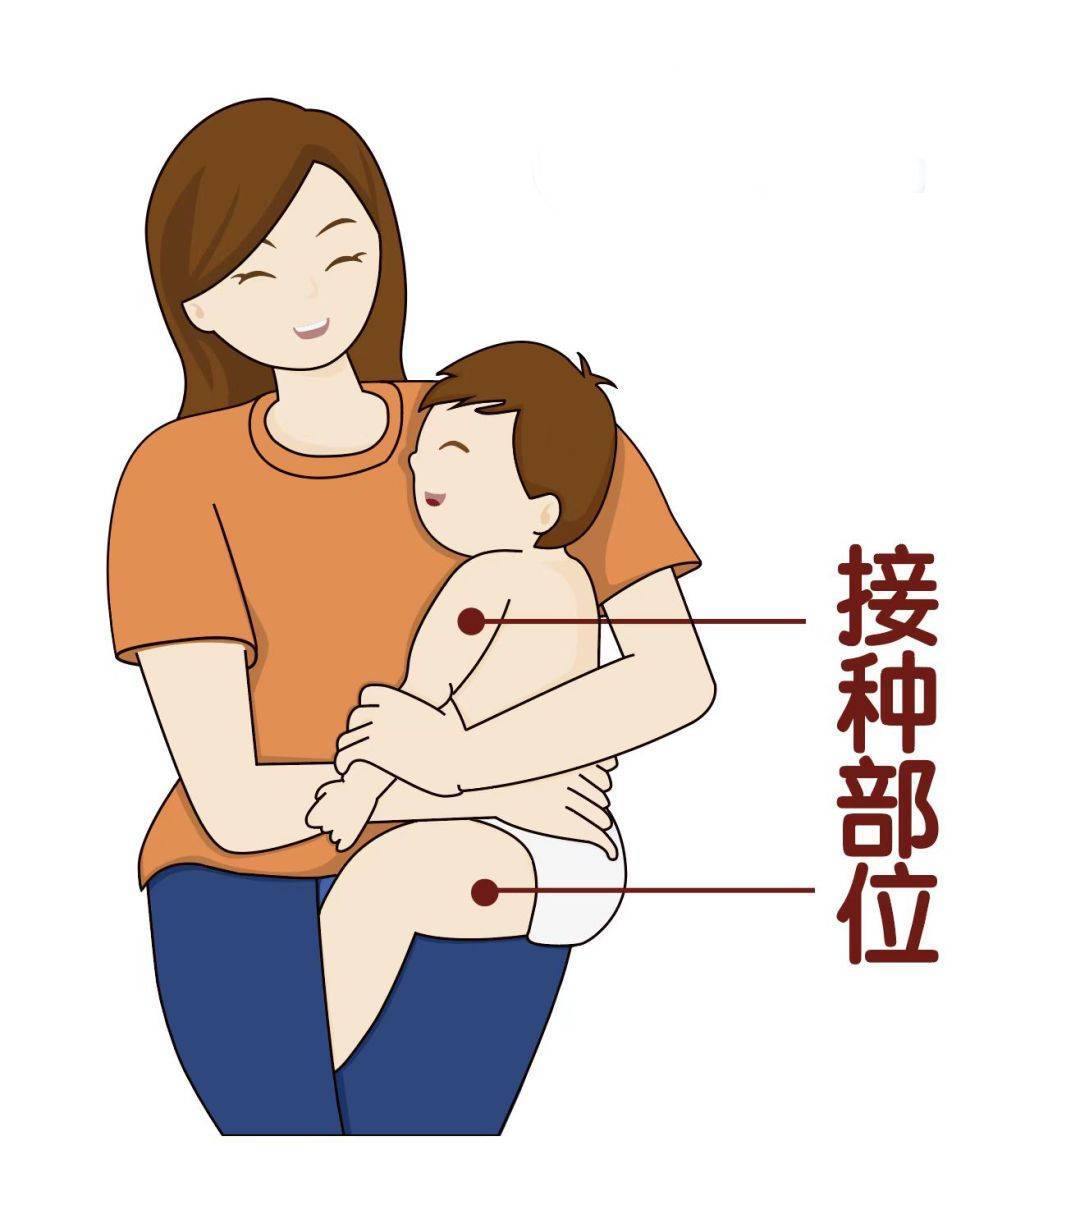 婴儿k1注射部位图解图片